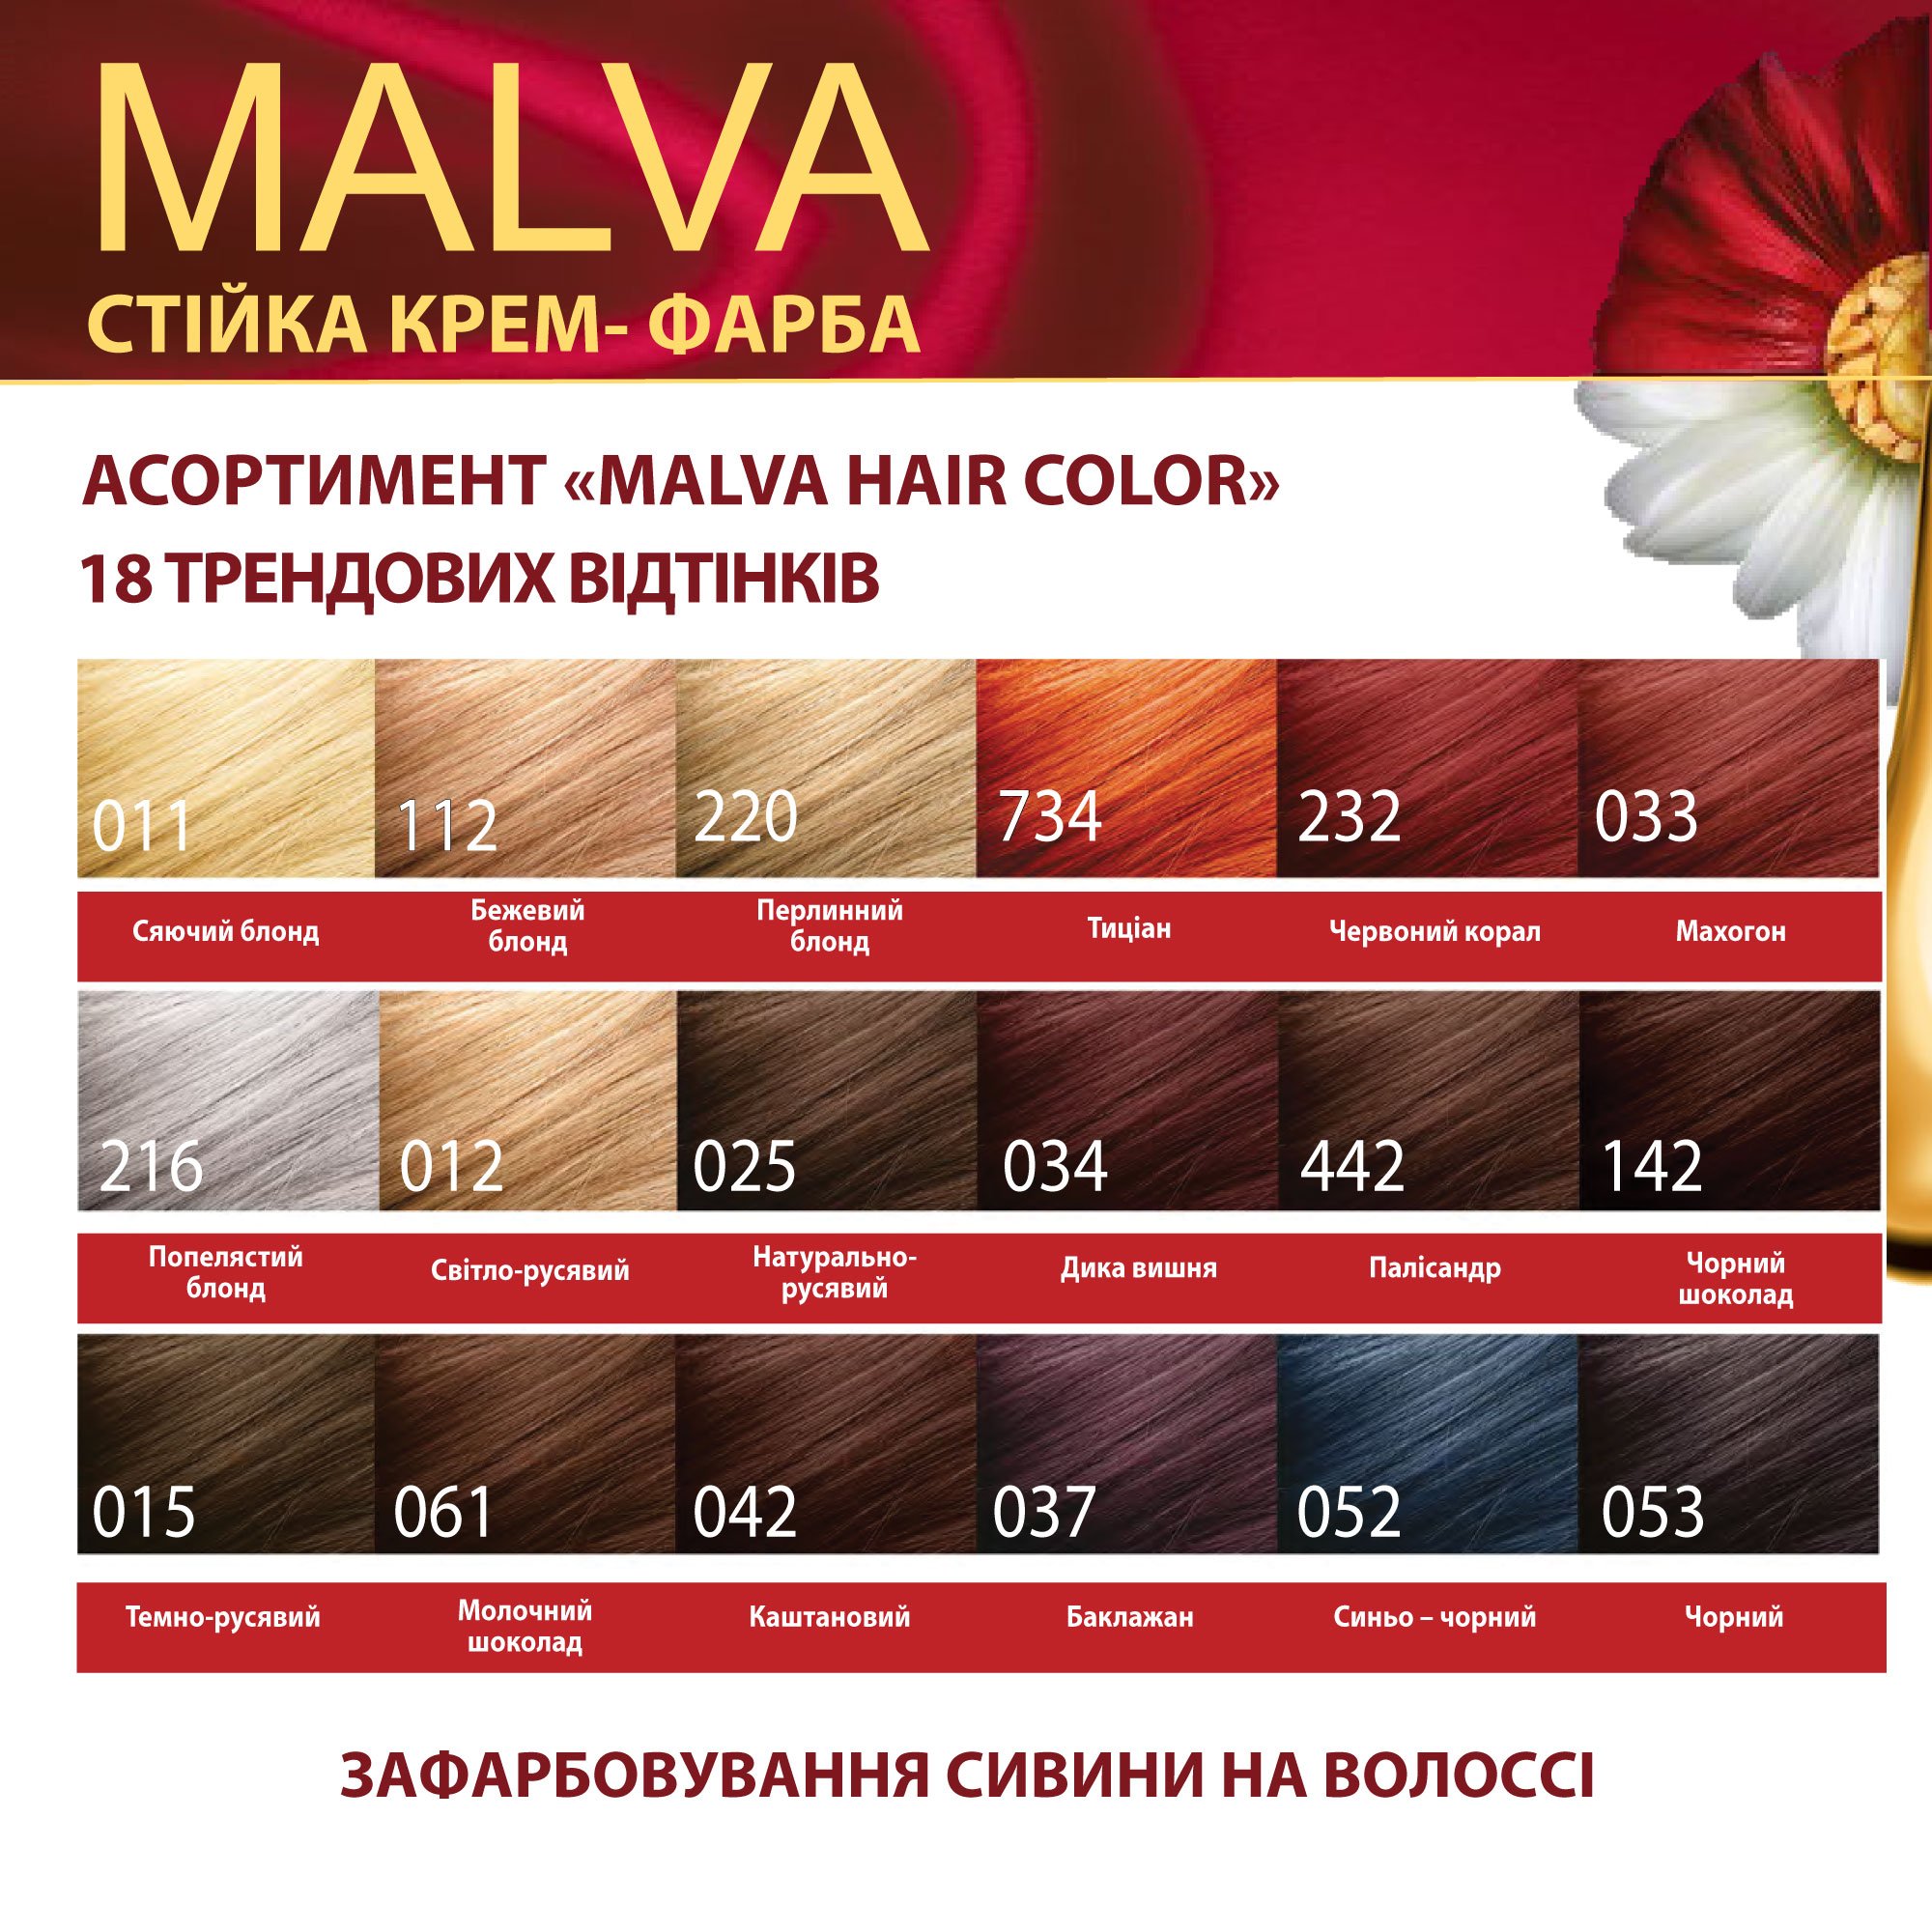 Крем-фарба для волосся Acme Color Malva, відтінок 442 (Палісандр), 95 мл - фото 6